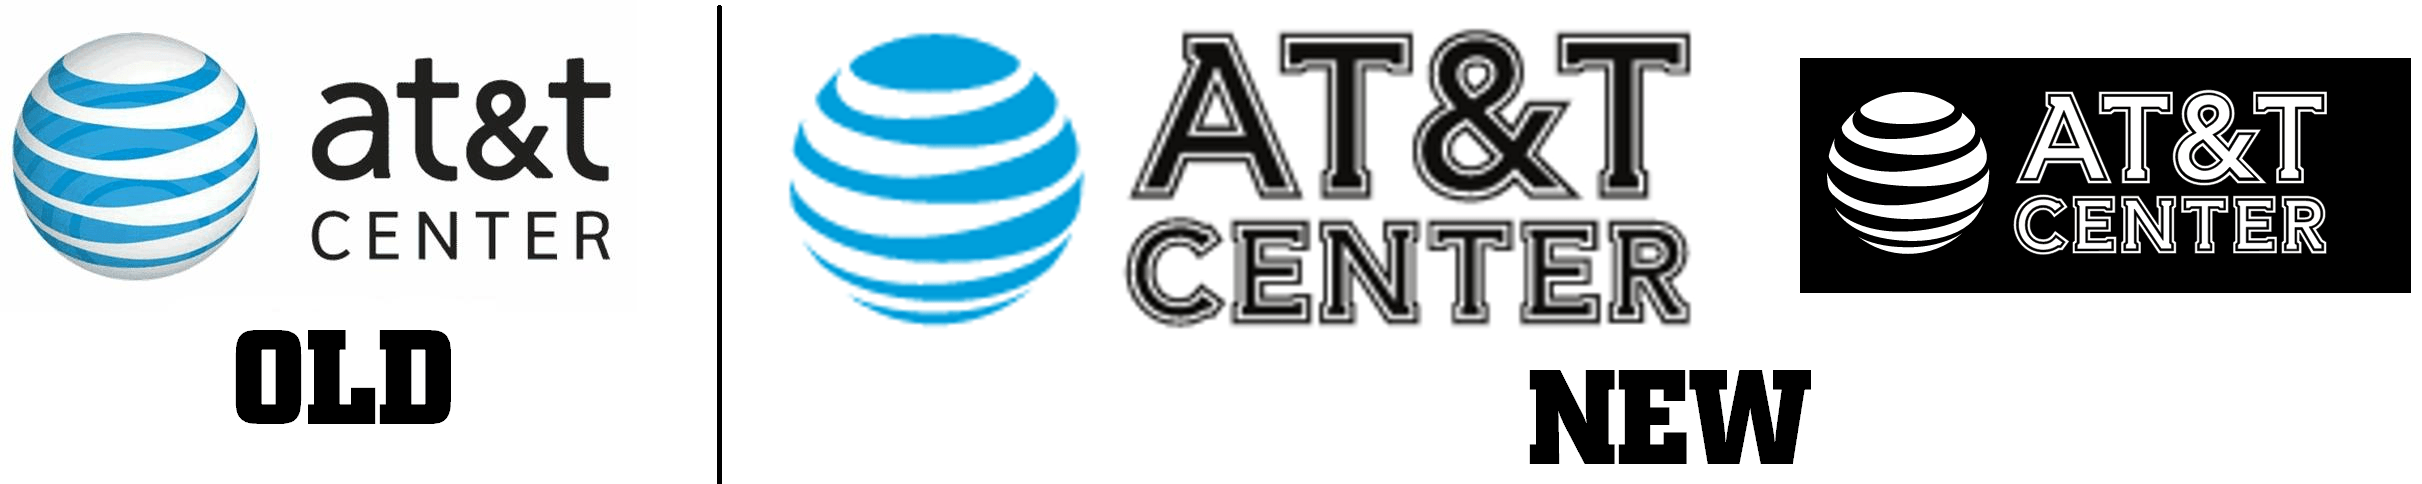 New AT&T Logo - AT&T Center New Logo - Sports Logos - Chris Creamer's Sports Logos ...